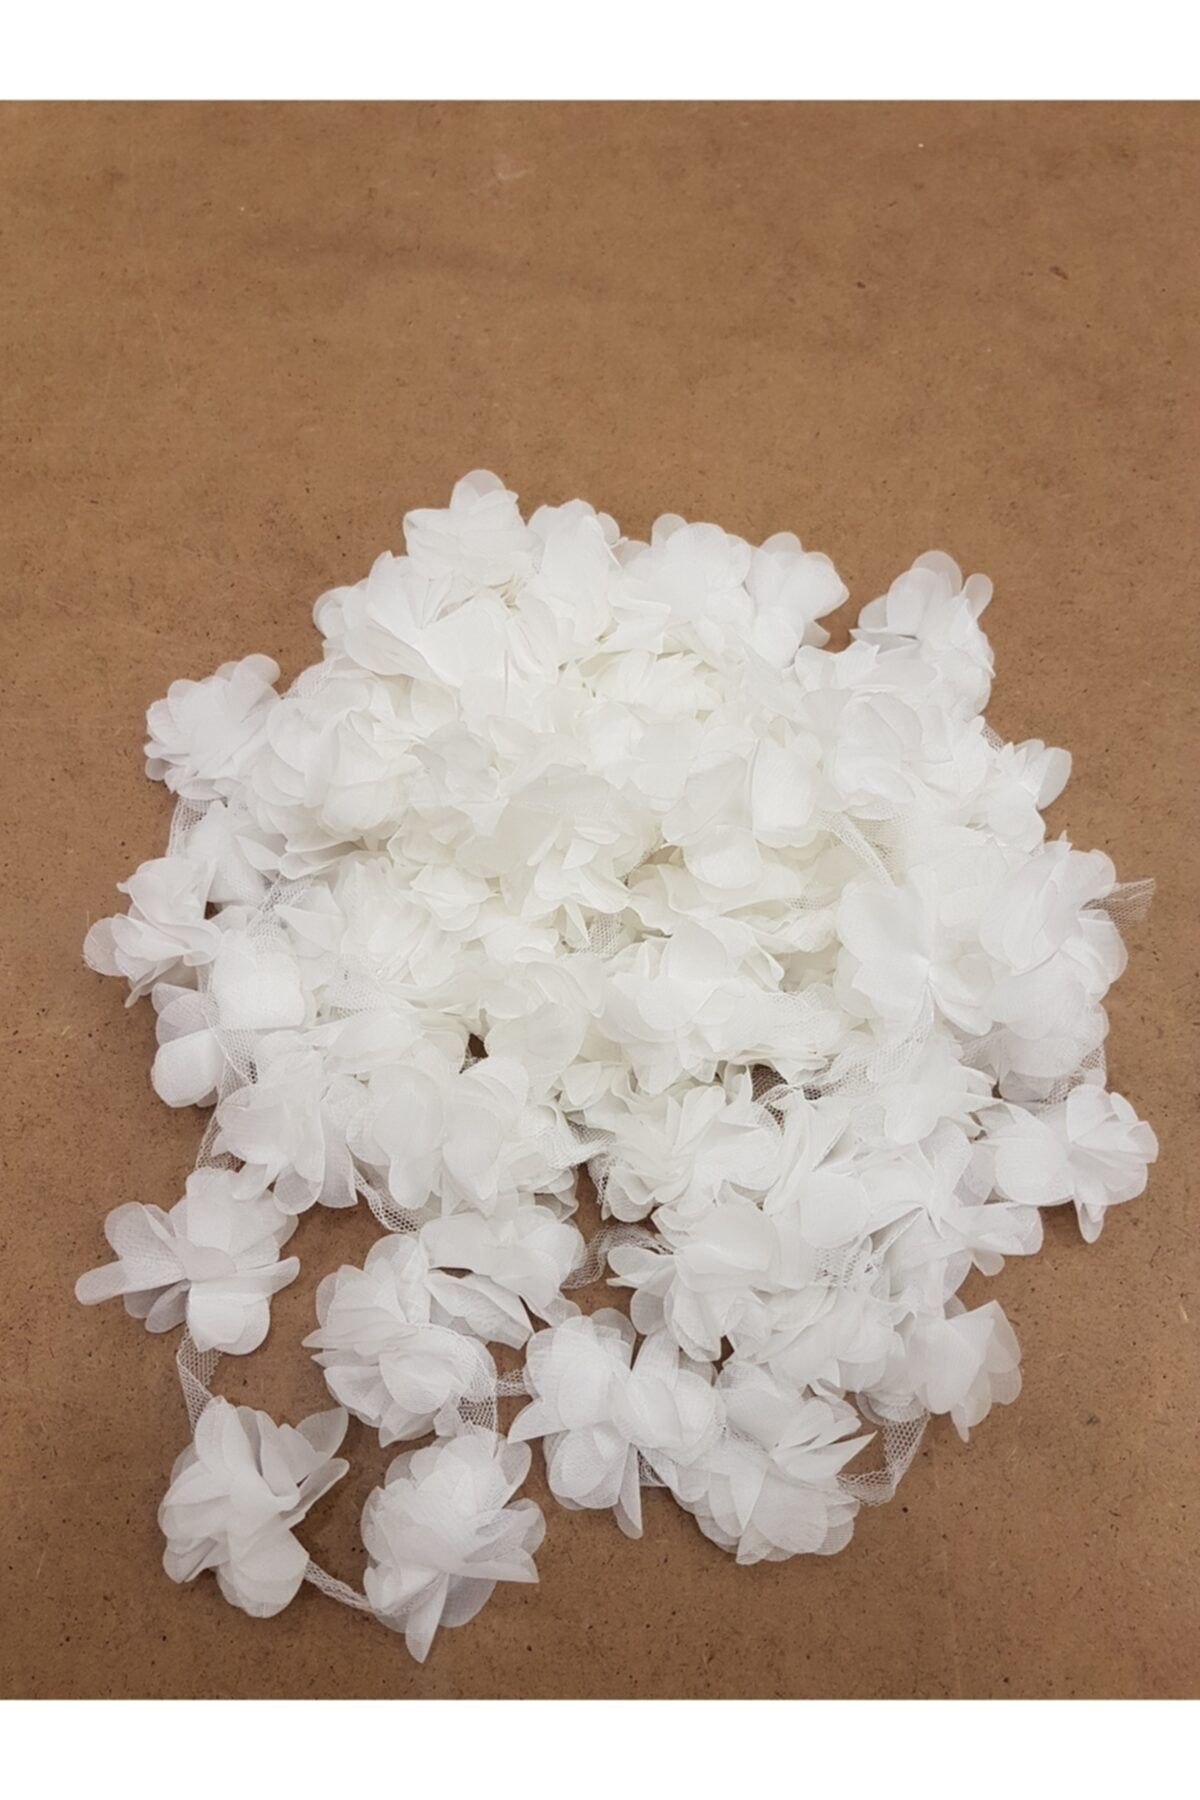 Aker Hediyelik Beyaz Lazer Gül 9m Lazer Kesim Gül Süsleme Paketleme Malzemesi 120 Adet Organze Kumaş Yapay Çiçekler